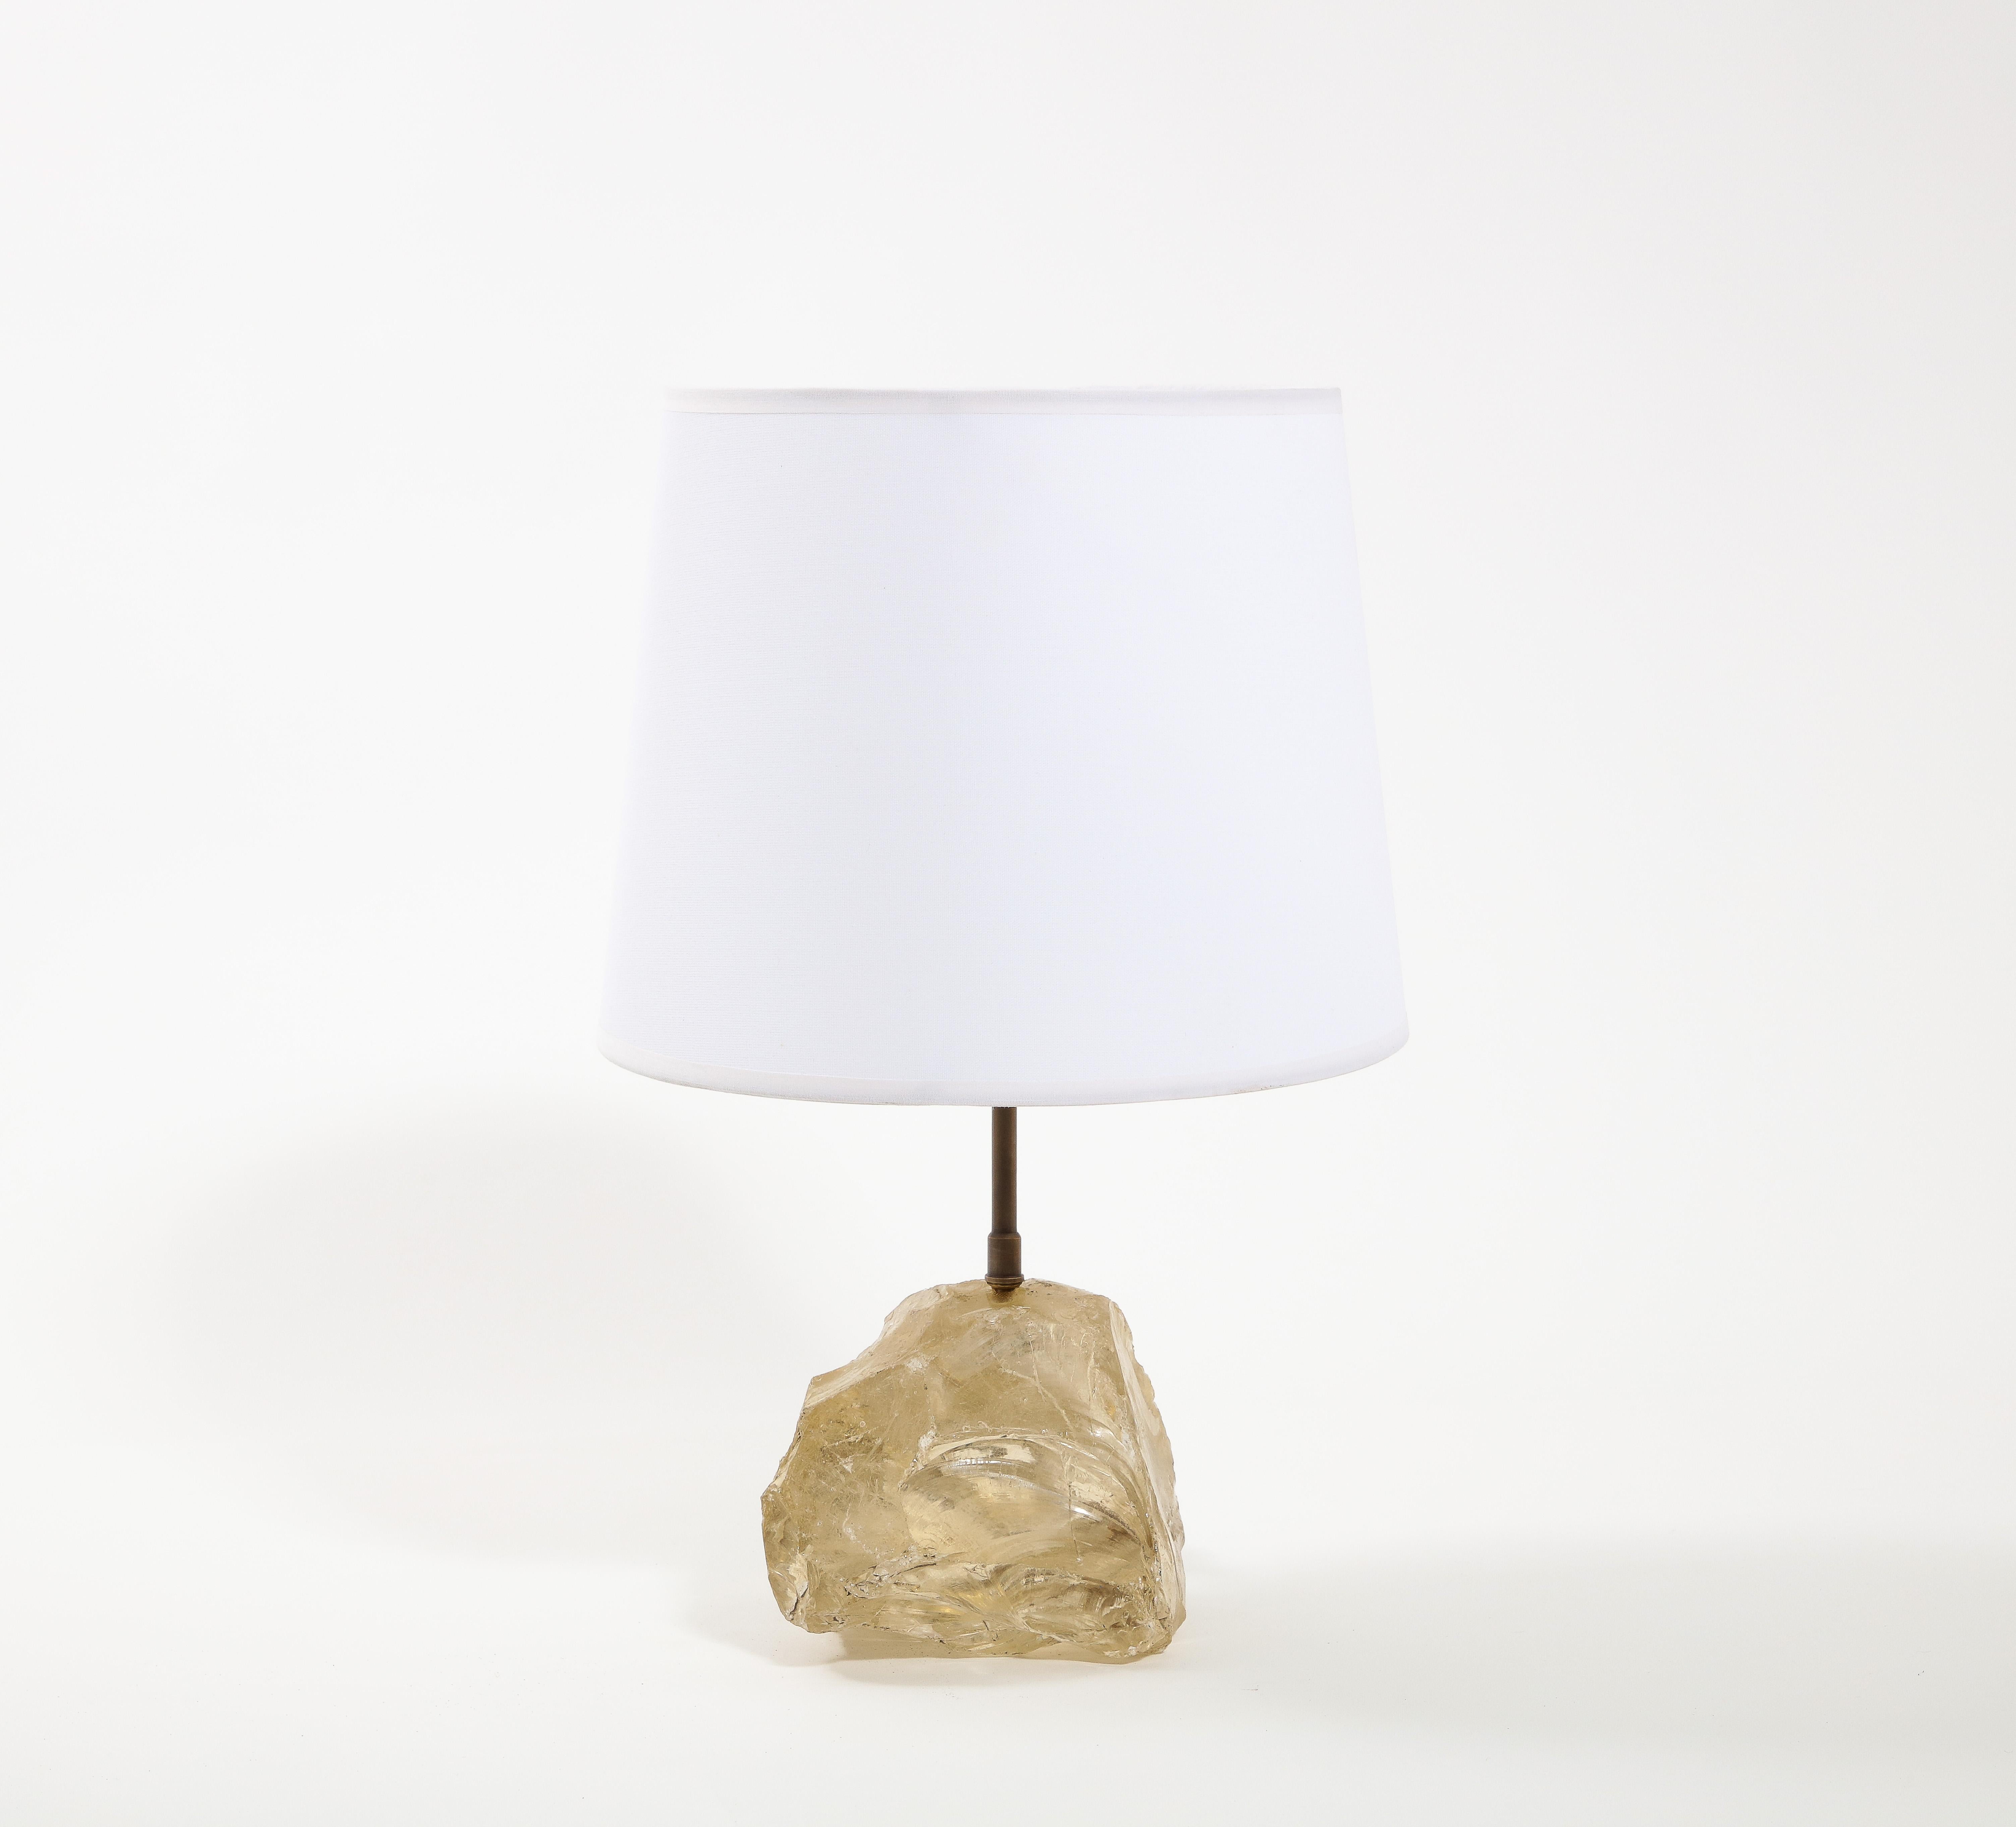 Lampe aus gemeißeltem Bernstein-Blockkristall nach Jean Michel Frank. Die Größe bezieht sich nur auf die Basis. Kein Schirm enthalten.